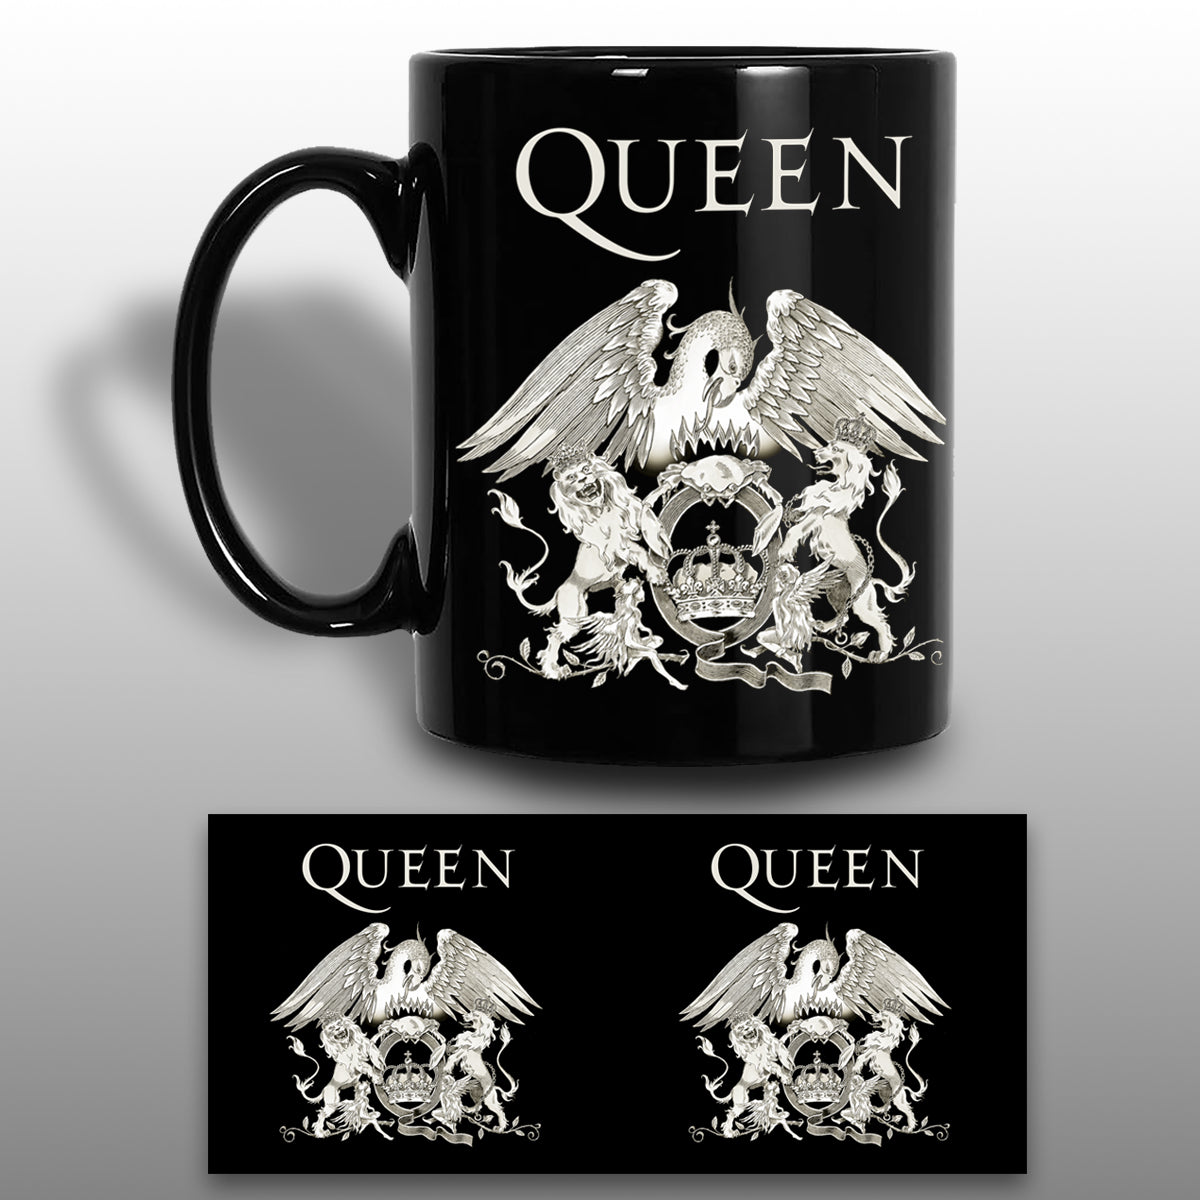 Queen - Crest Black Gloss Mug